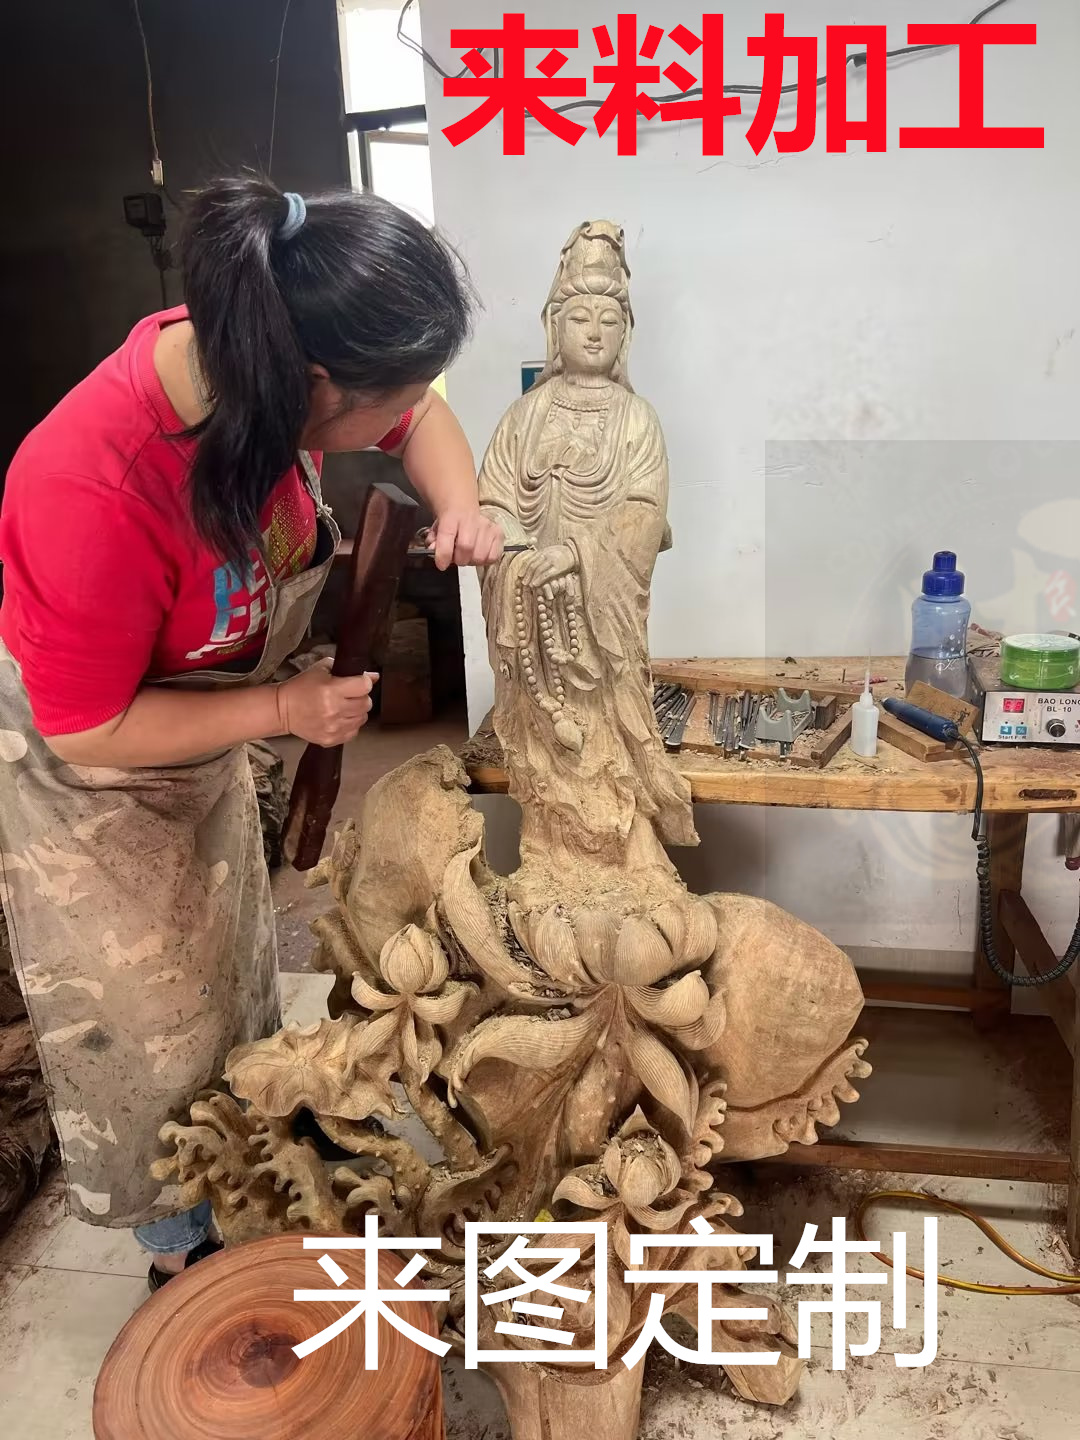 木雕定制雕刻定做订做订制来料加工彩绘神像佛像菩萨人物动物摆件